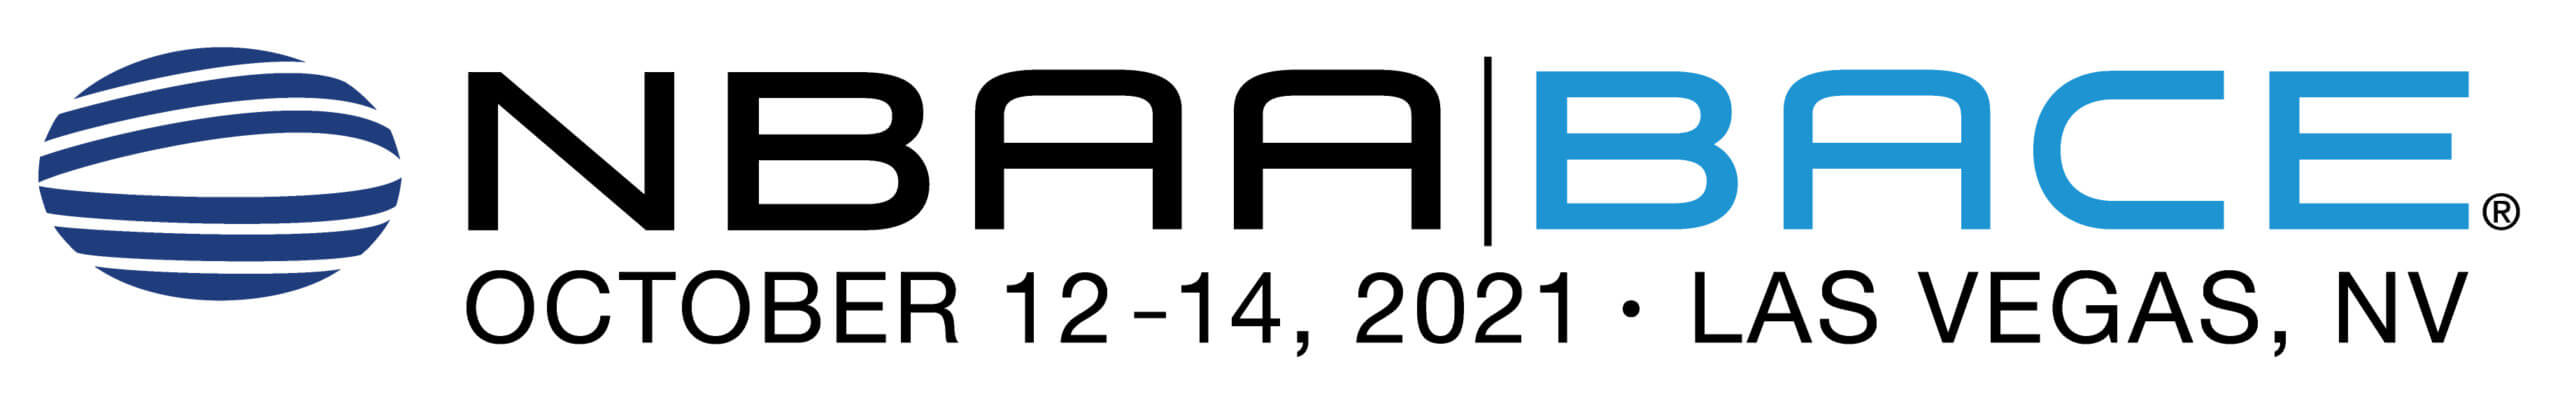 2021 NBAA-BACE Logos